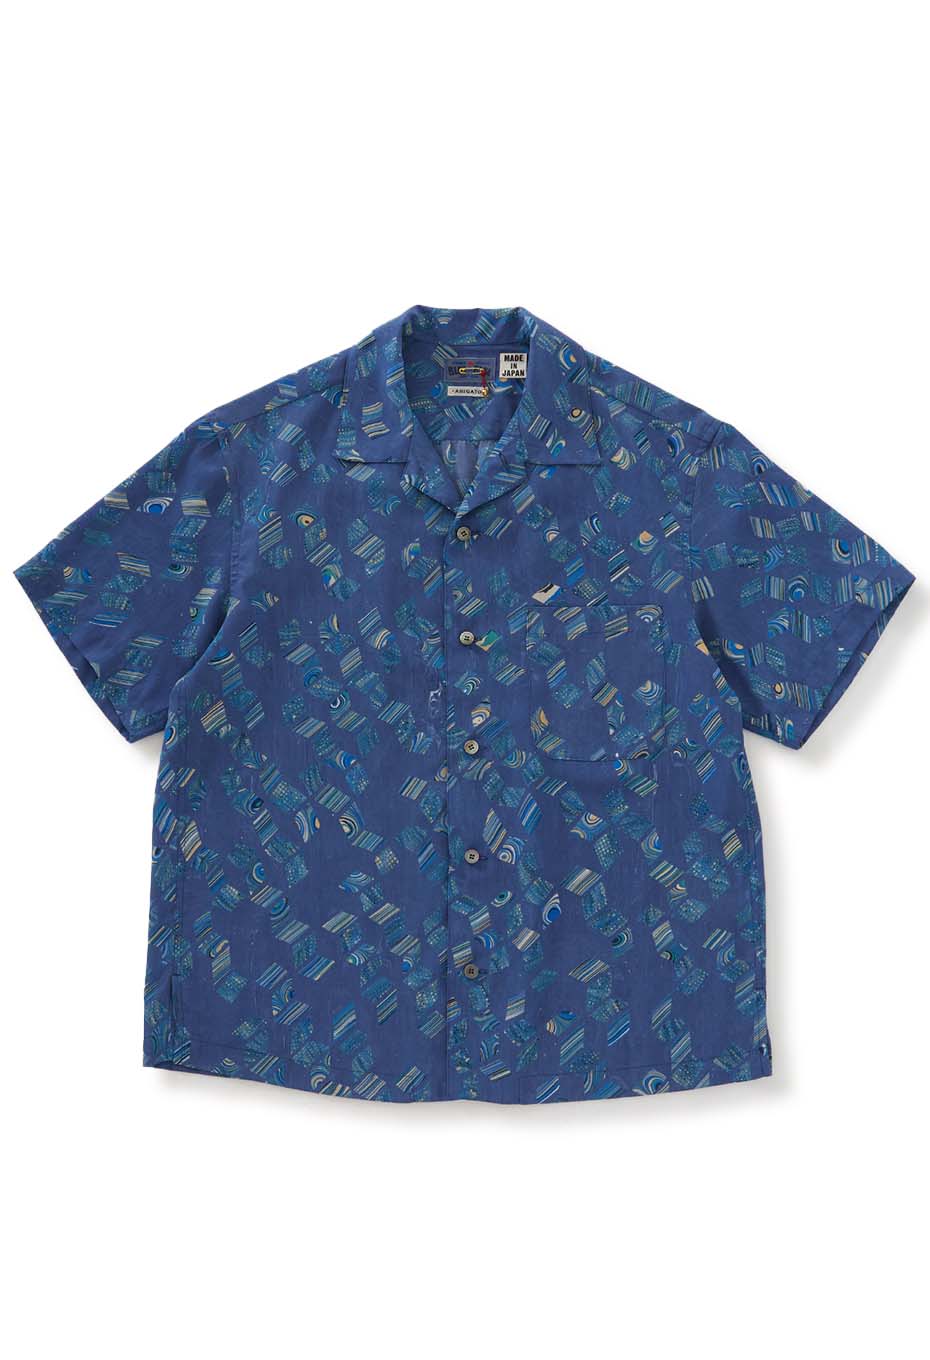 Marble print Hawaiian shirt